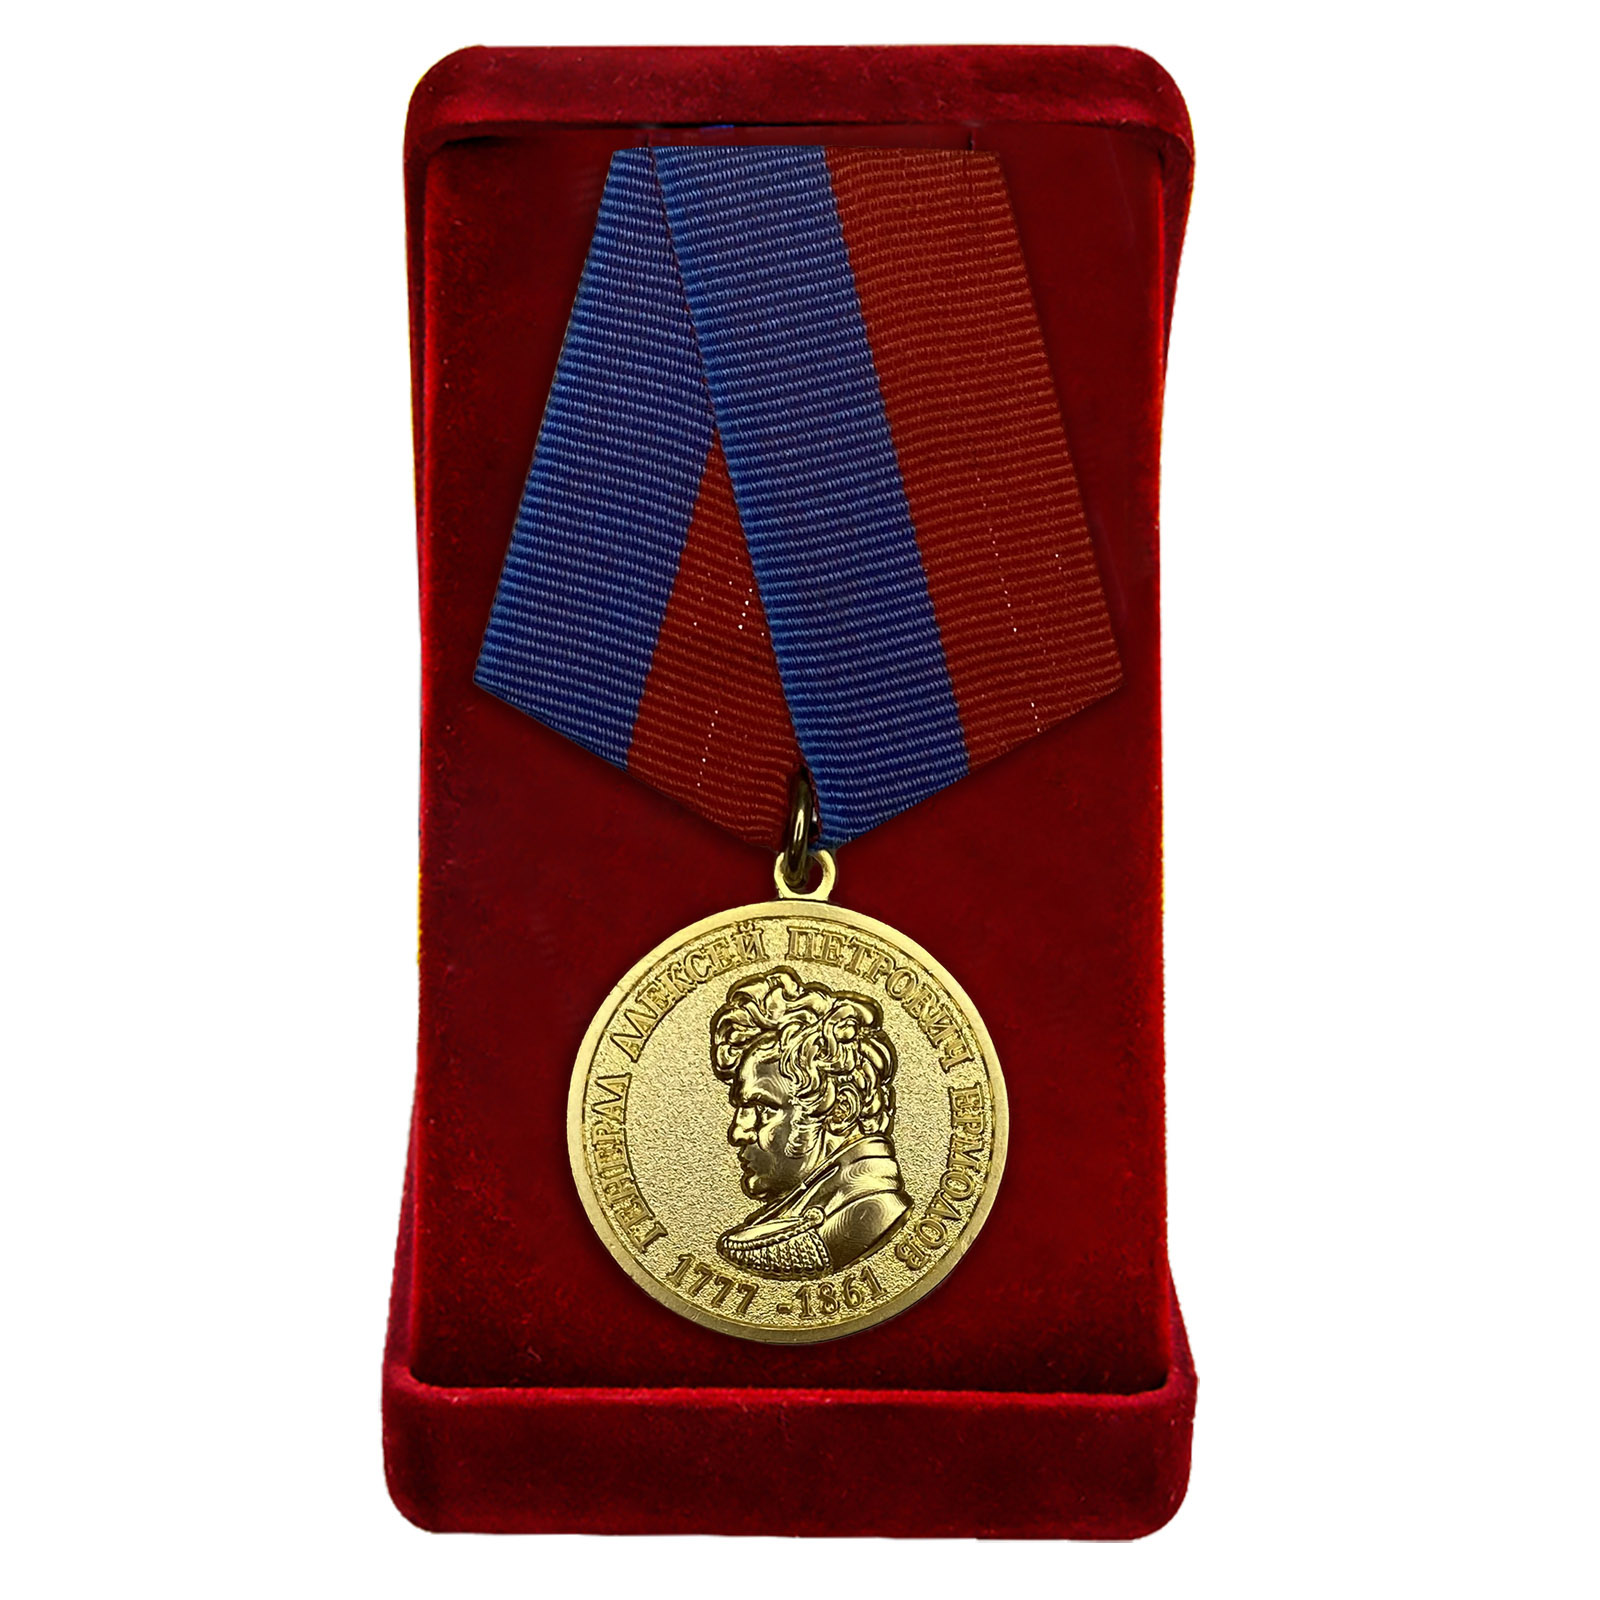 Медаль генерала Ермолова "За безупречную службу"